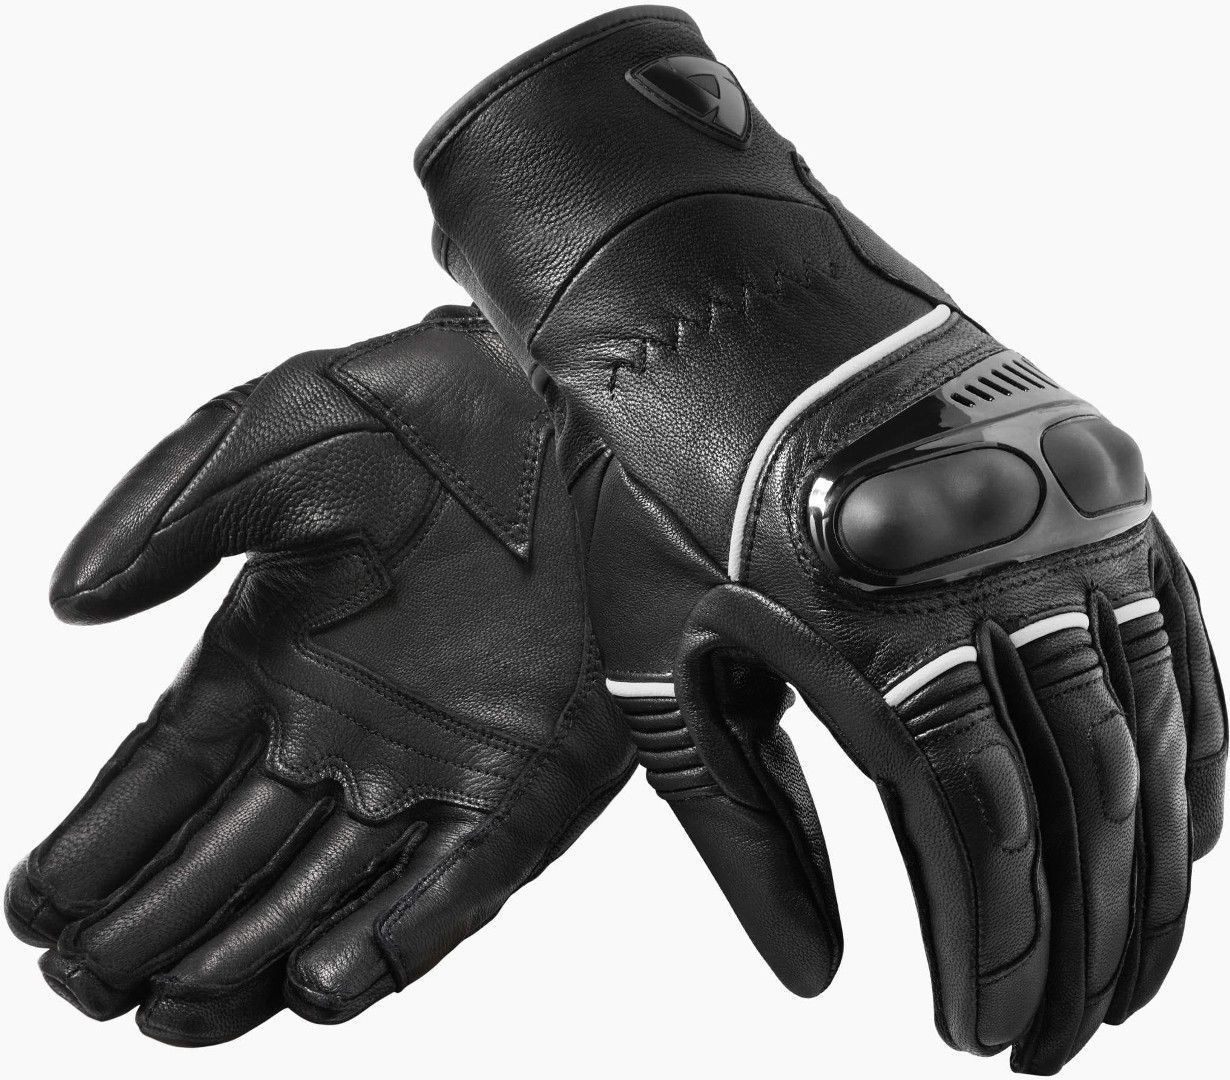 Revit Hyperion H20 wasserdichte Motorradhandschuhe, schwarz-weiss, Größe 3XL, schwarz-weiss, Größe 3XL